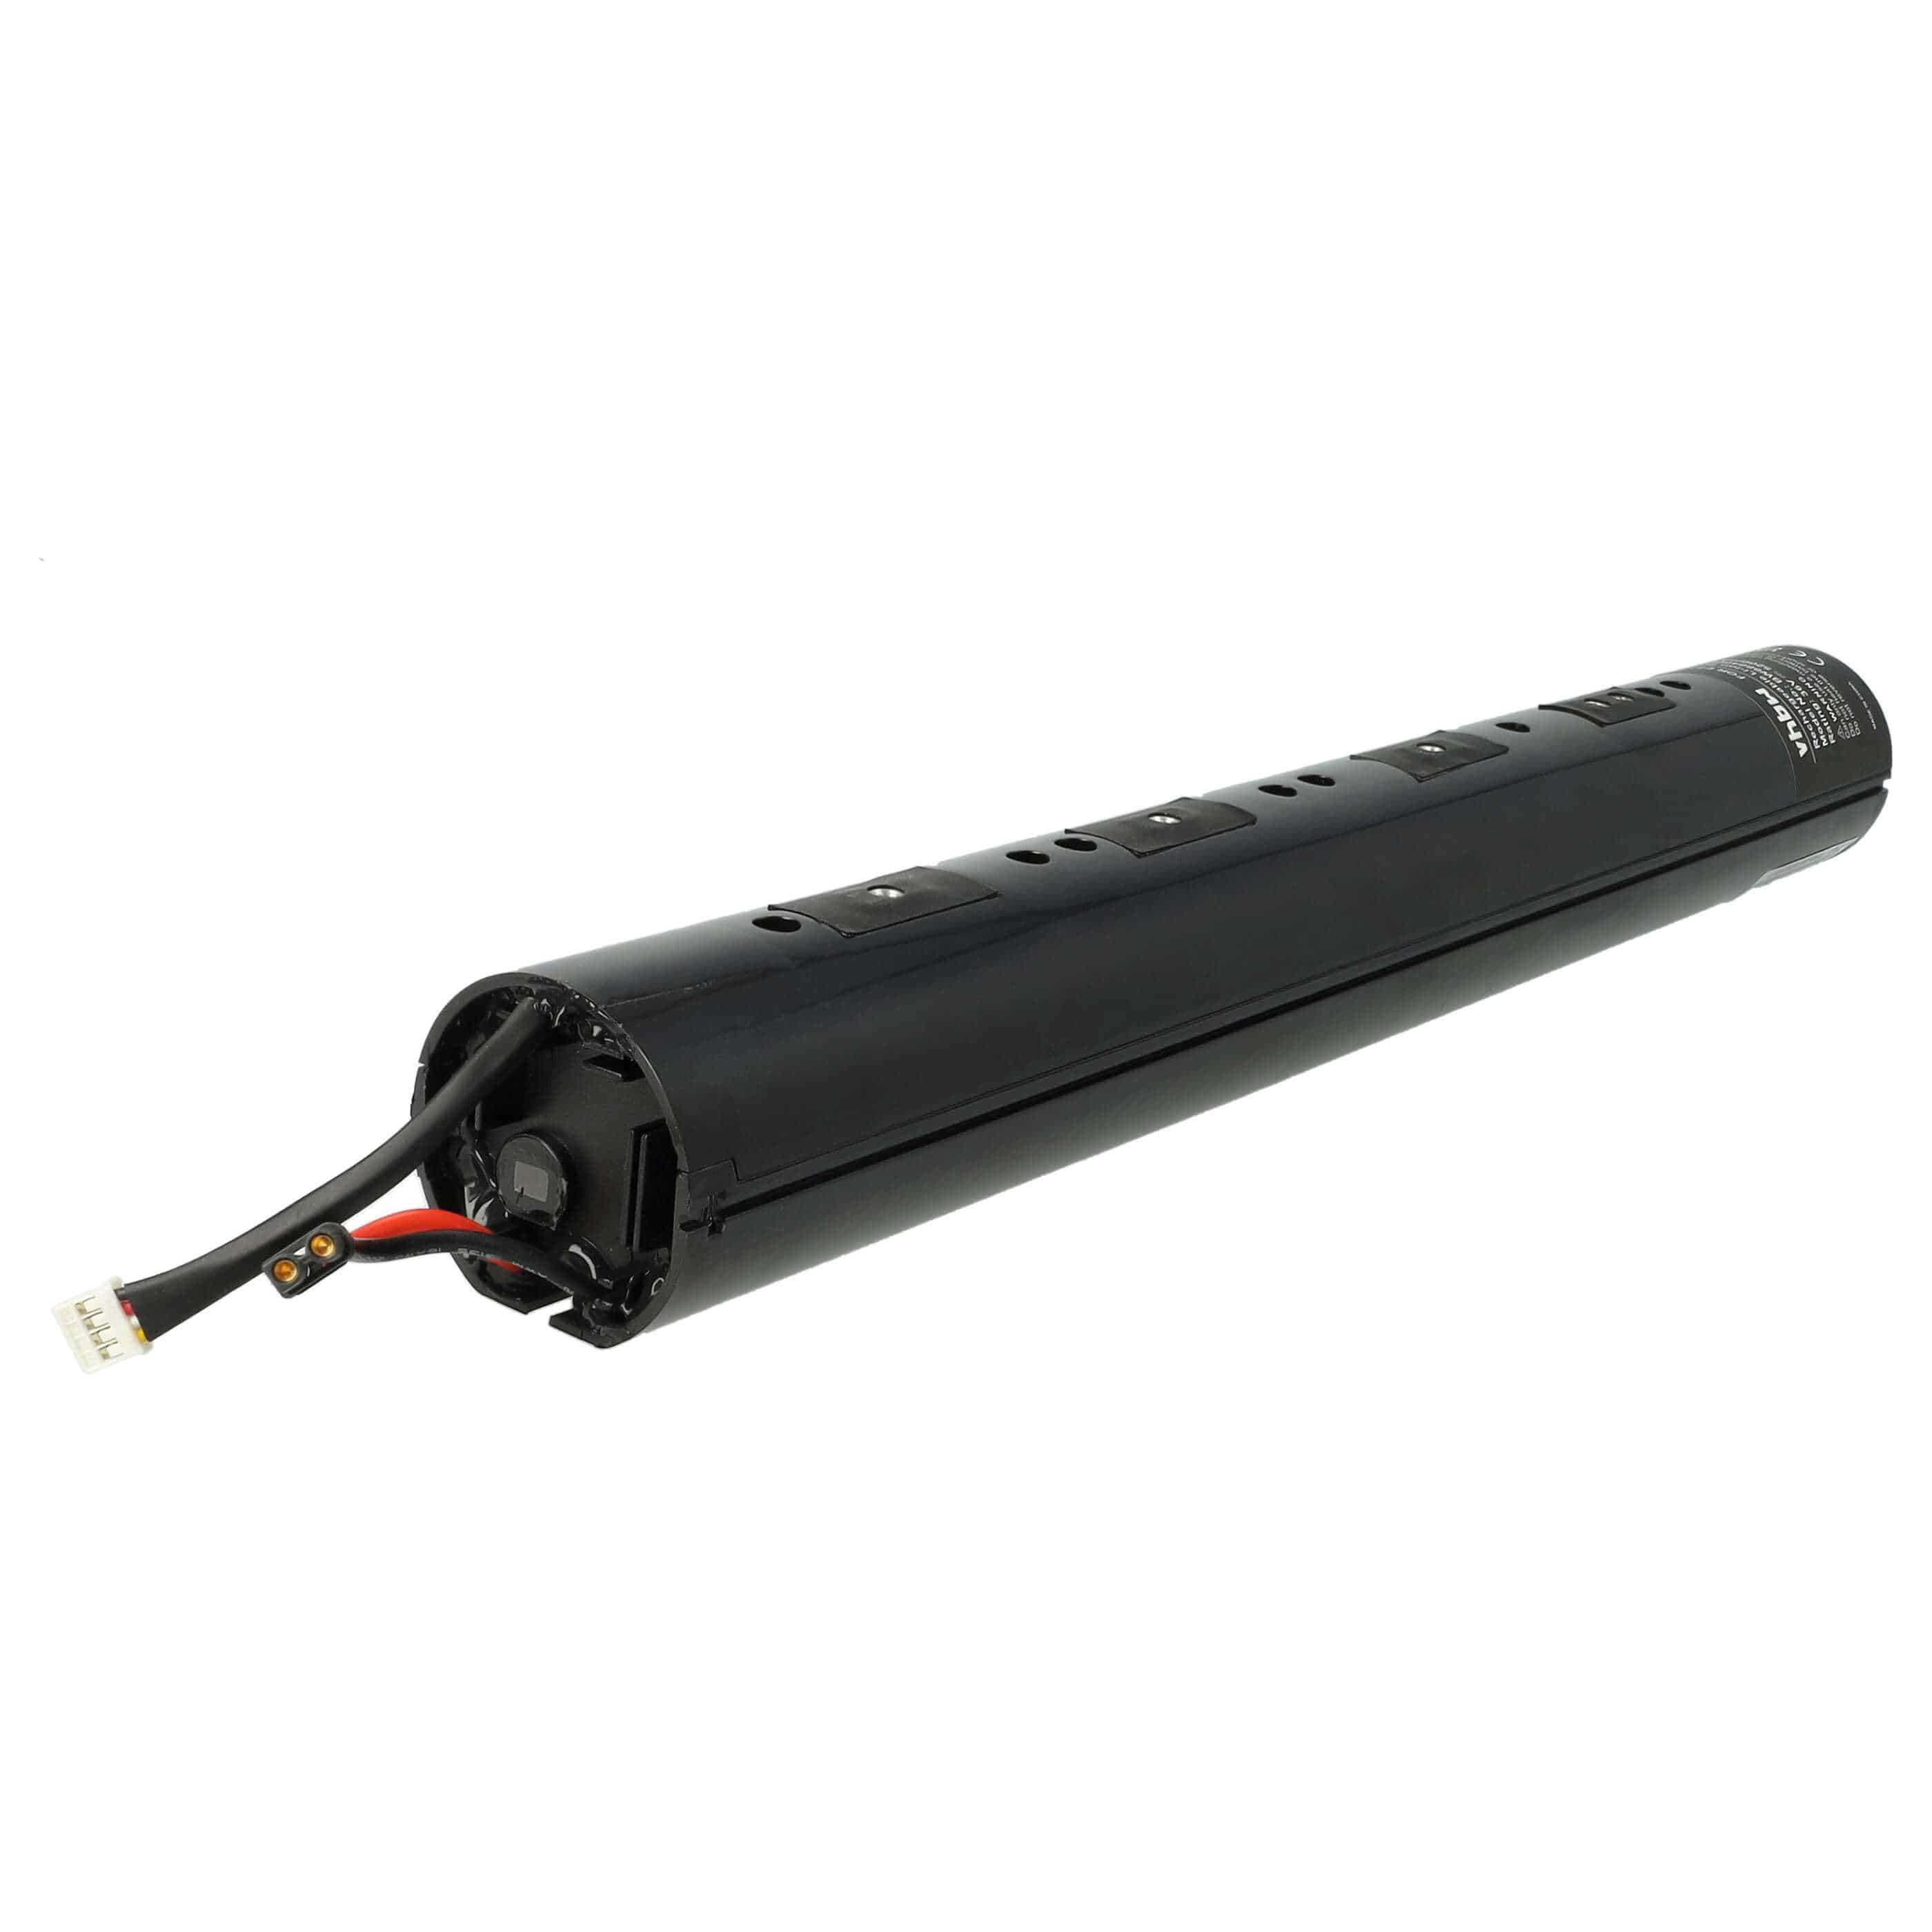 Electric Scooter Battery Replacement for Segway Ninebot NEB1002-H1, NEB1002-U1, NEB1002-H - 5200mAh 36V Li-Ion